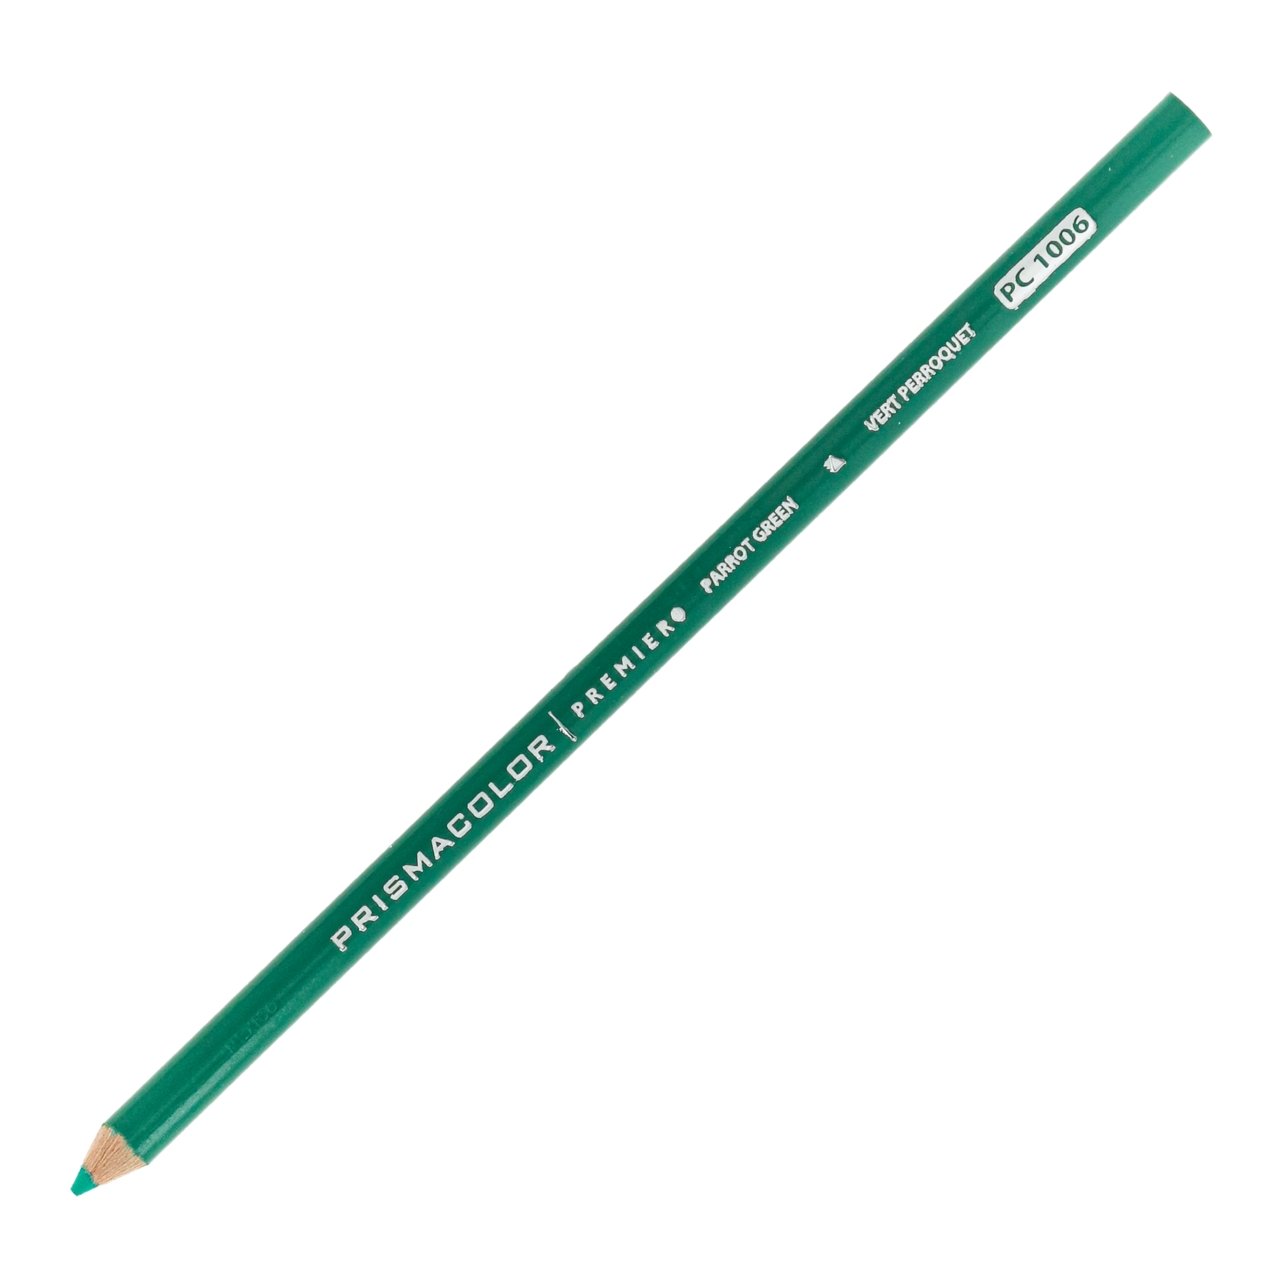 Prismacolor Premier Colored Pencil - Parrot Green 1006 - merriartist.com